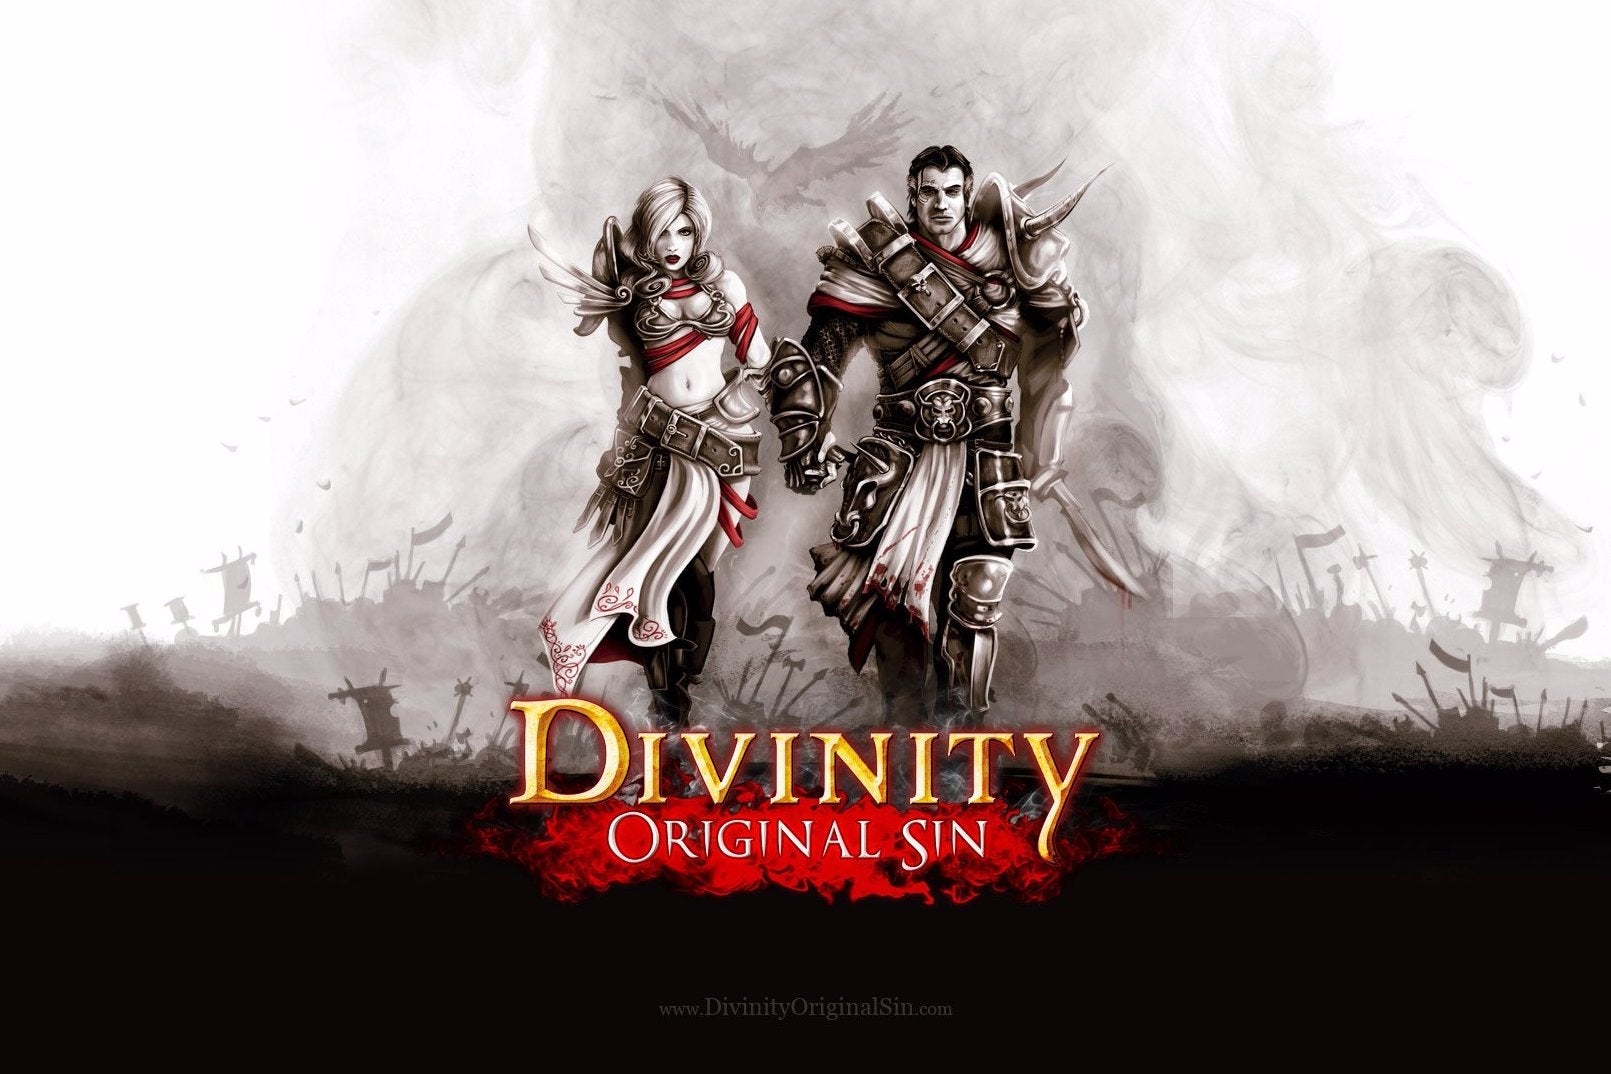 Immagine di Divinity Original Sin, superata la soglia del milione di copie vendute su Steam